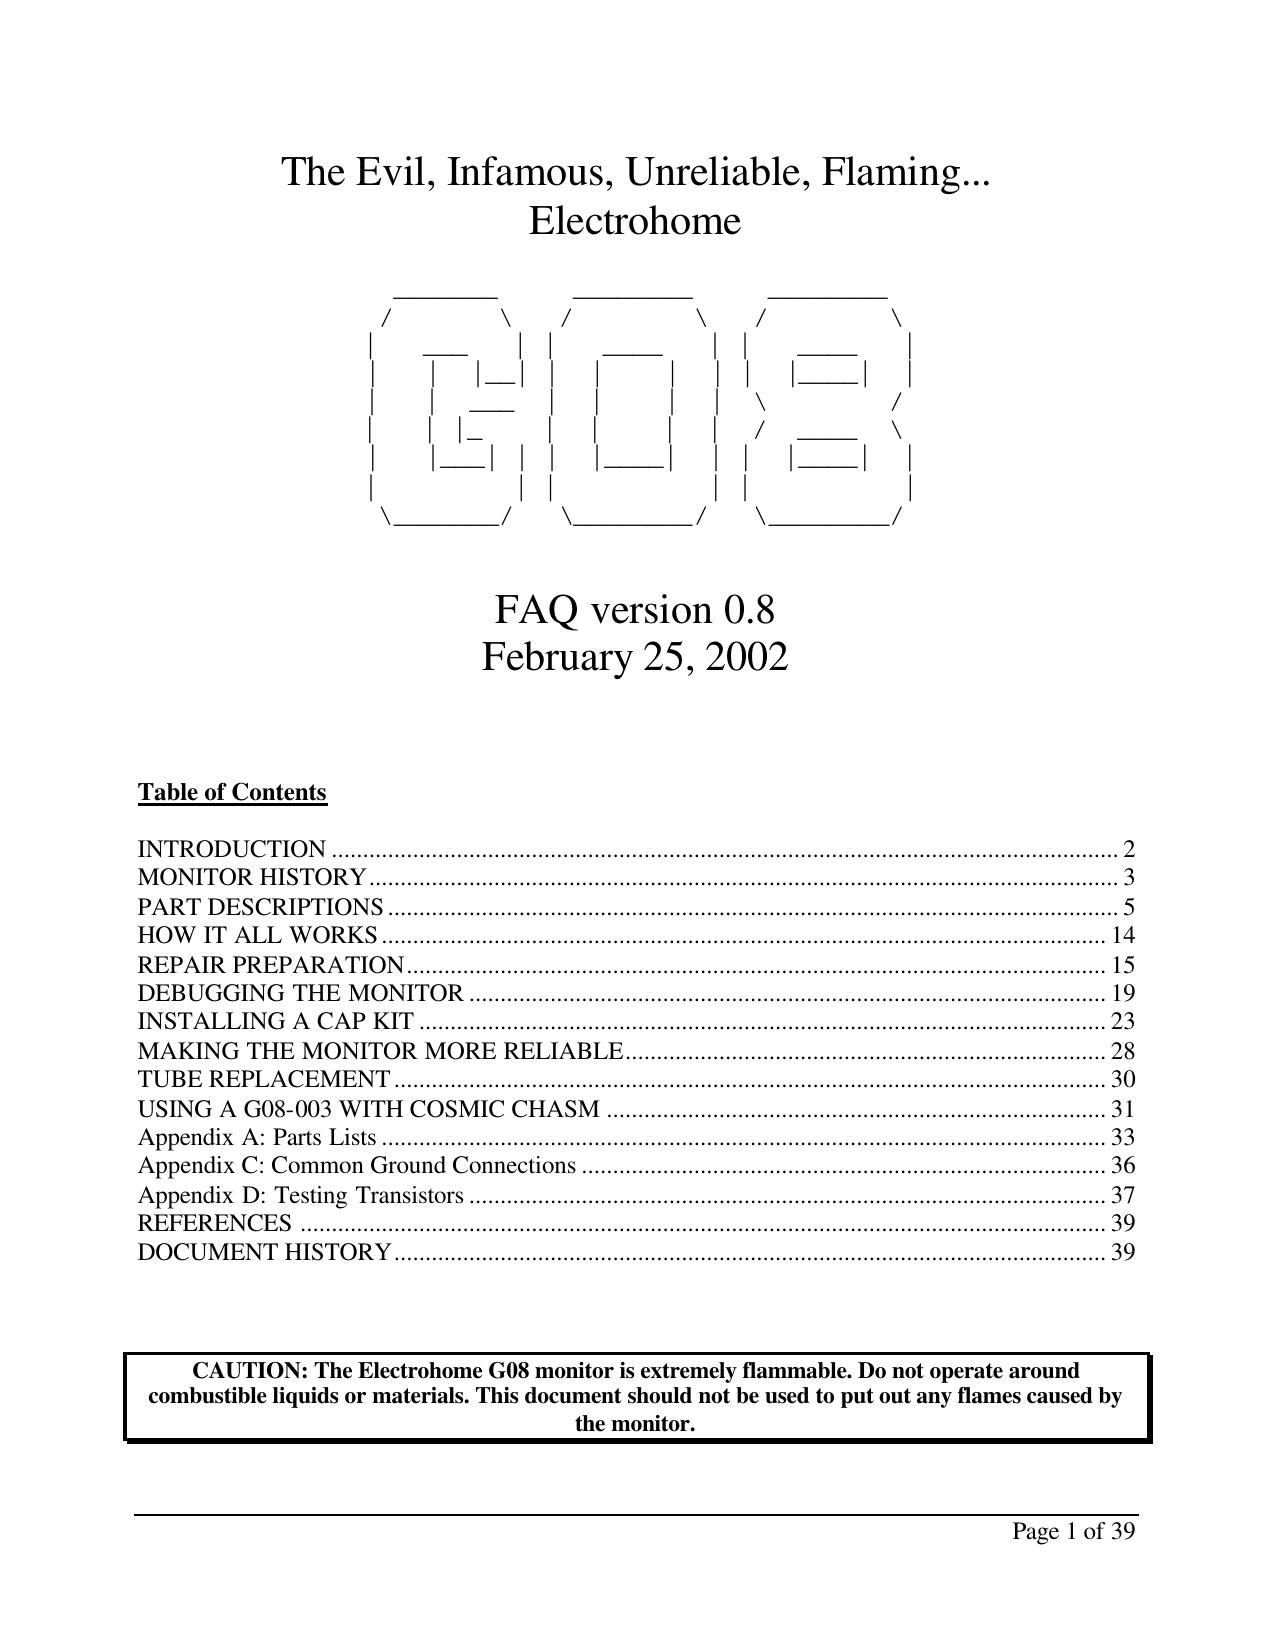 Electrohome G08 FAQ